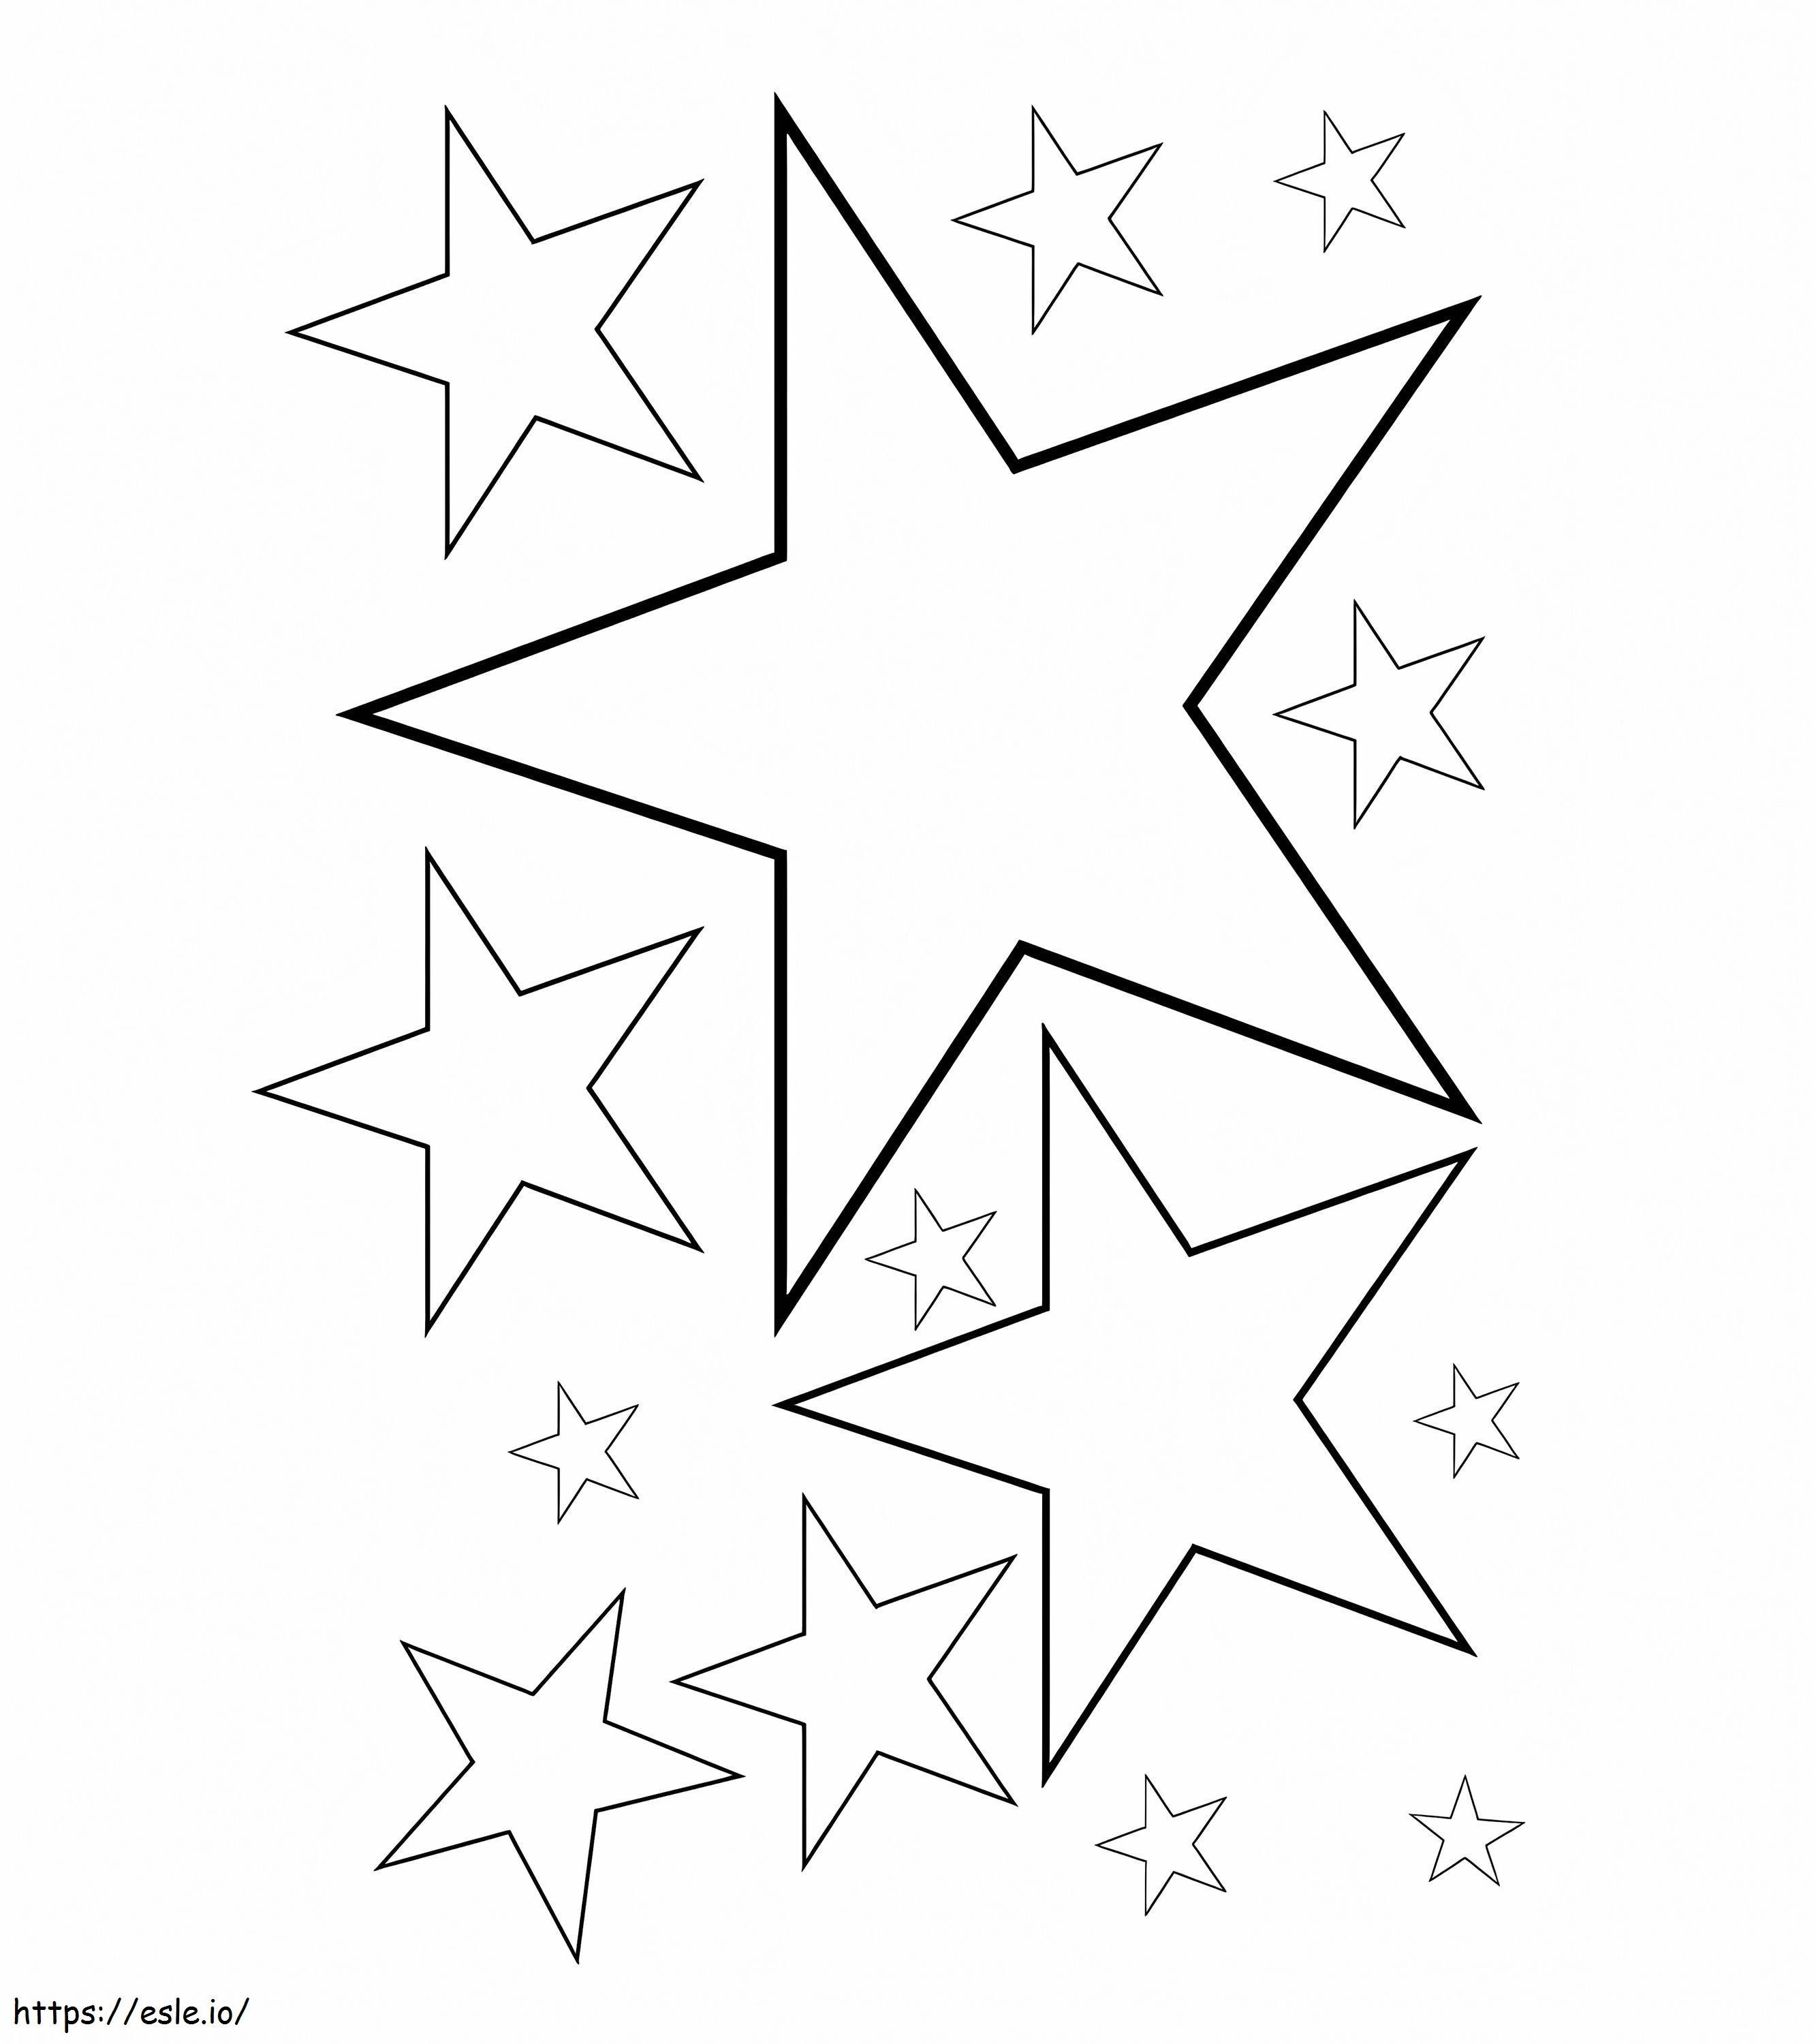 Die Sterne ausmalbilder